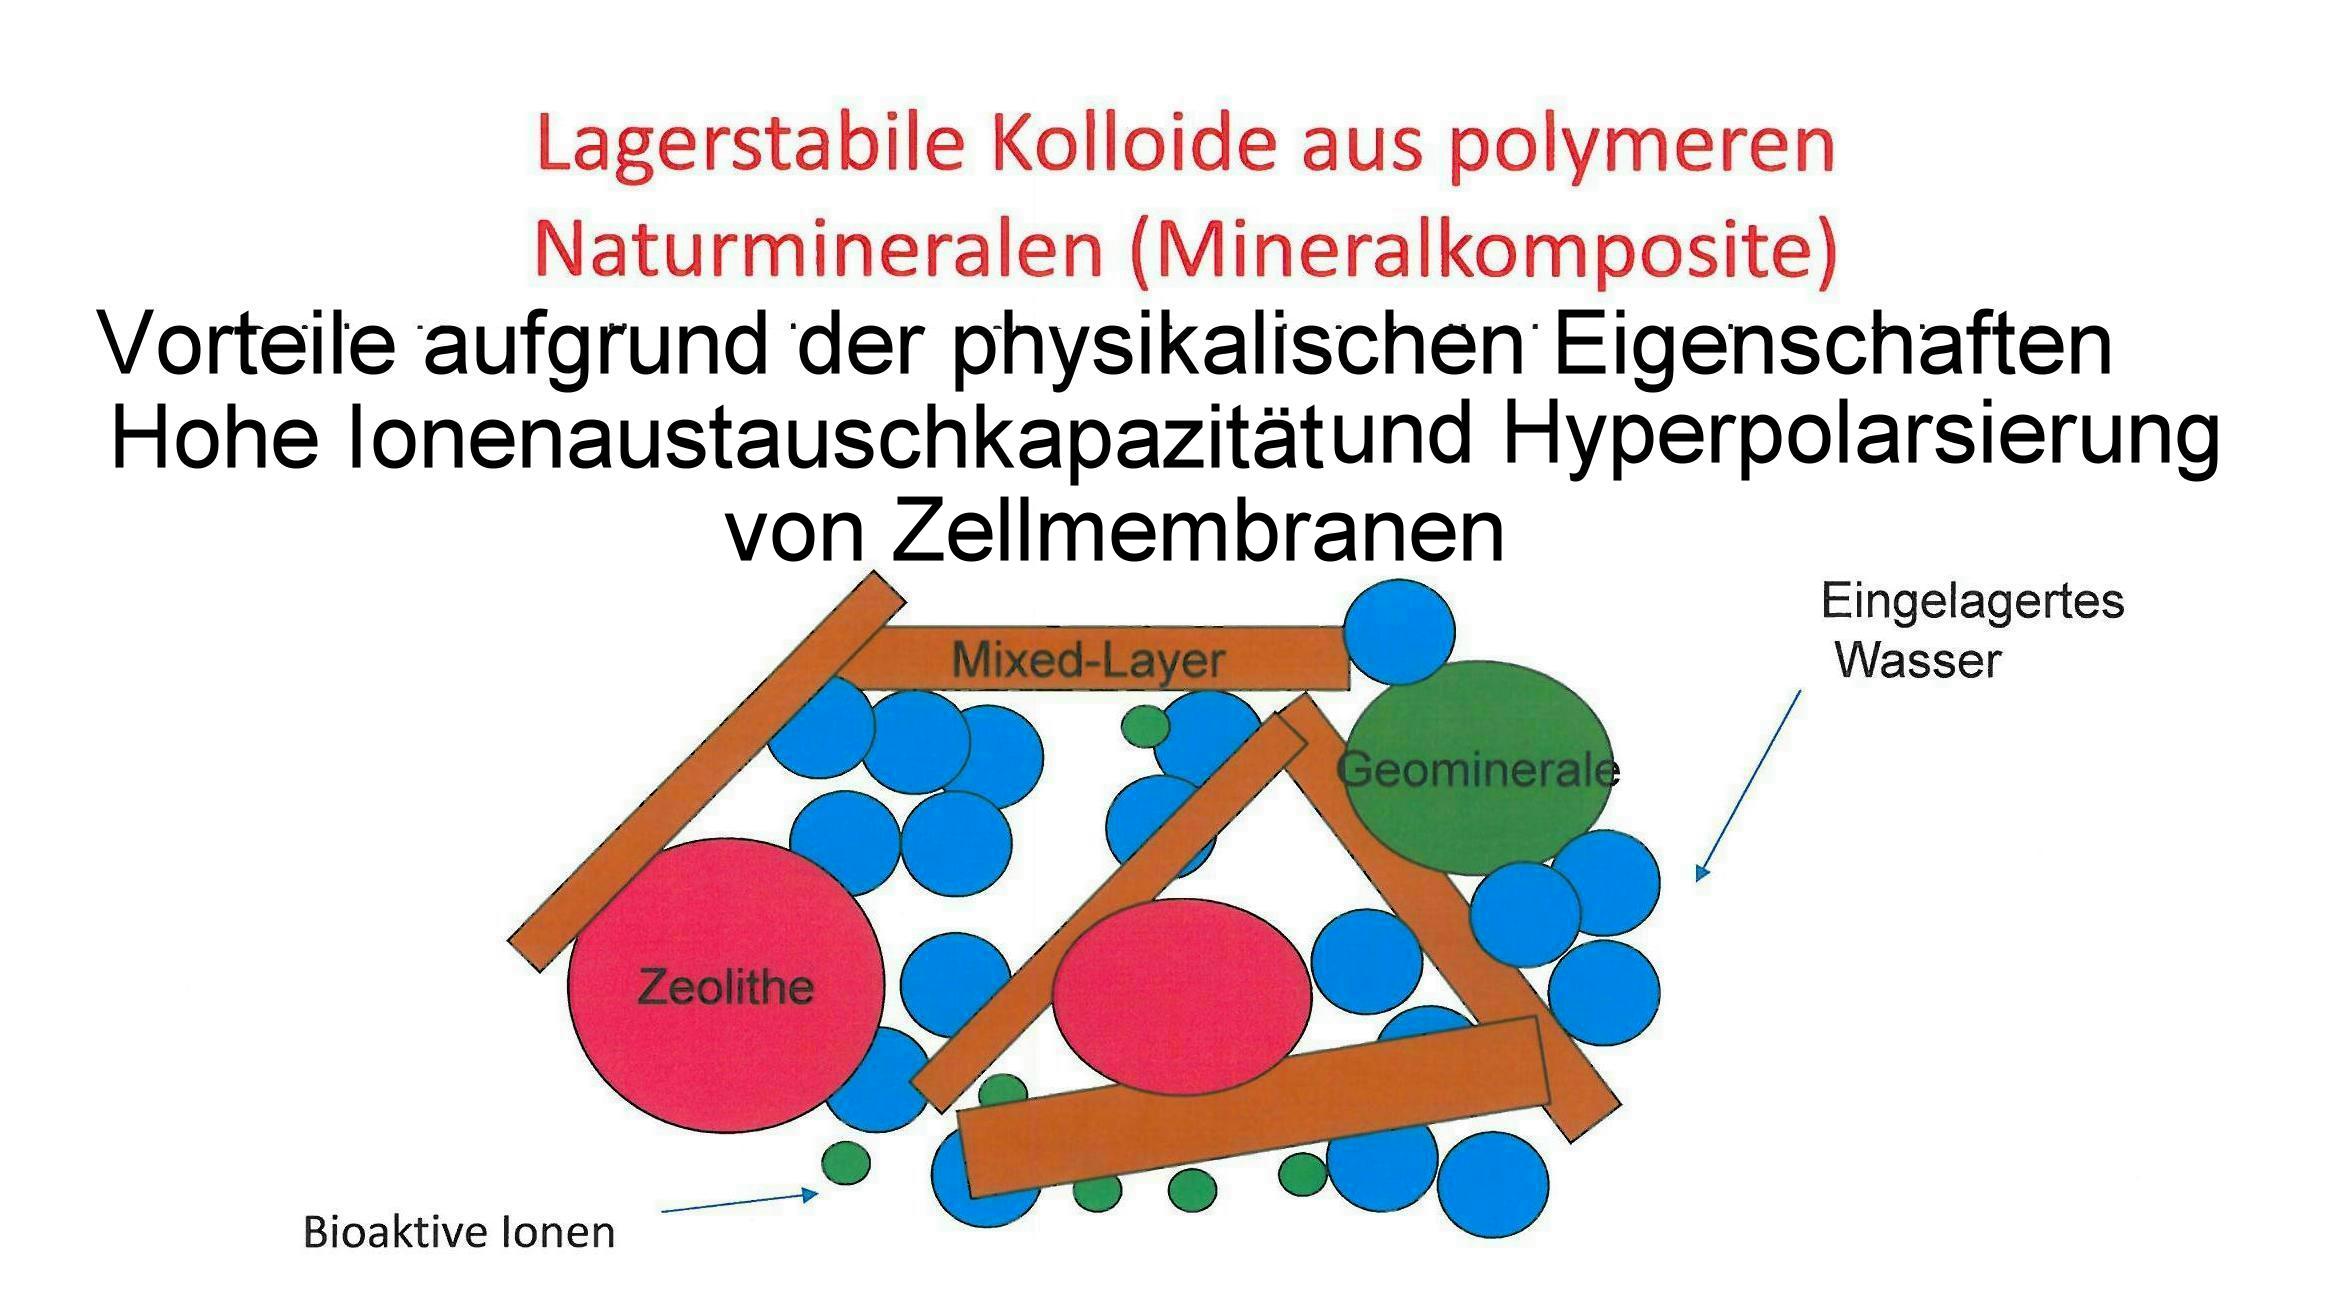 aus-Mineralkomposit- resultierende-Vorteile-Hohe-Ionenaustauschkapazität-und-Hyperpolarsierung-von-Zellmembranen-beii lagerstabilen Kolloiden-auspolymeren-Naturmineralien-bei-polymeren-Mineralkompositen